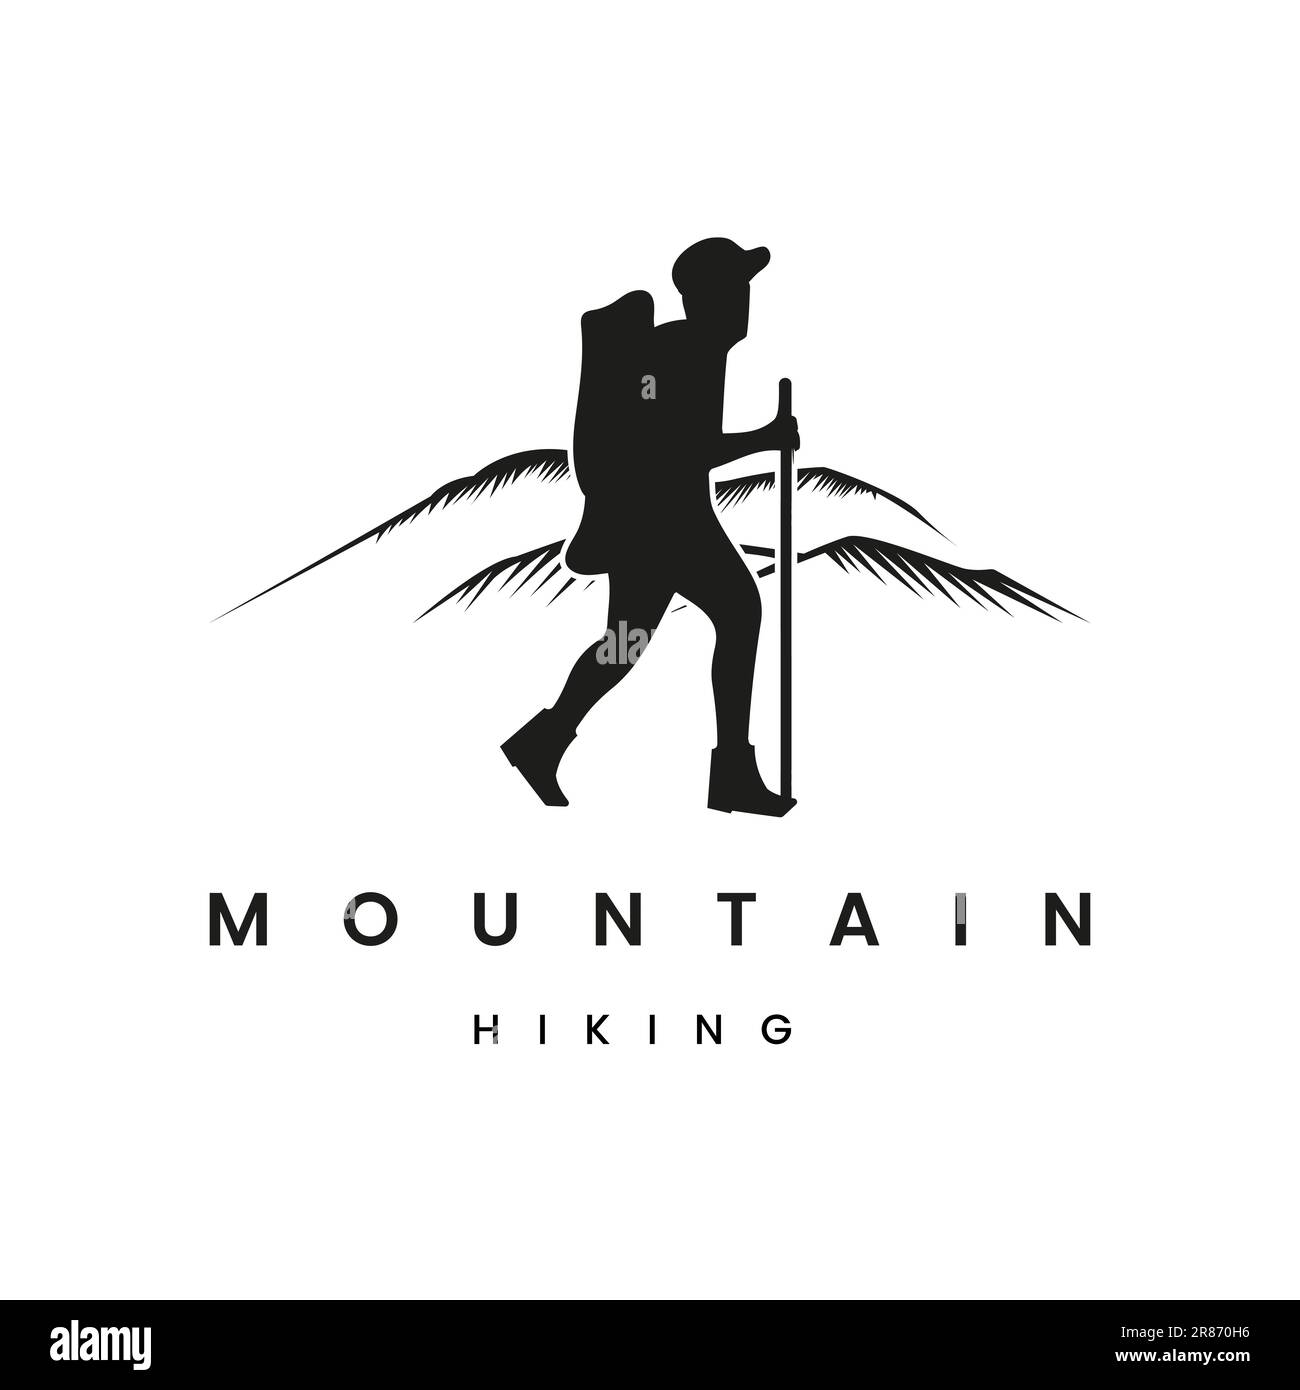 Klassische Retro-Silhouette des Mountainers, die einen Wanderer darstellt. Premium-Vektor-Logo Stock Vektor